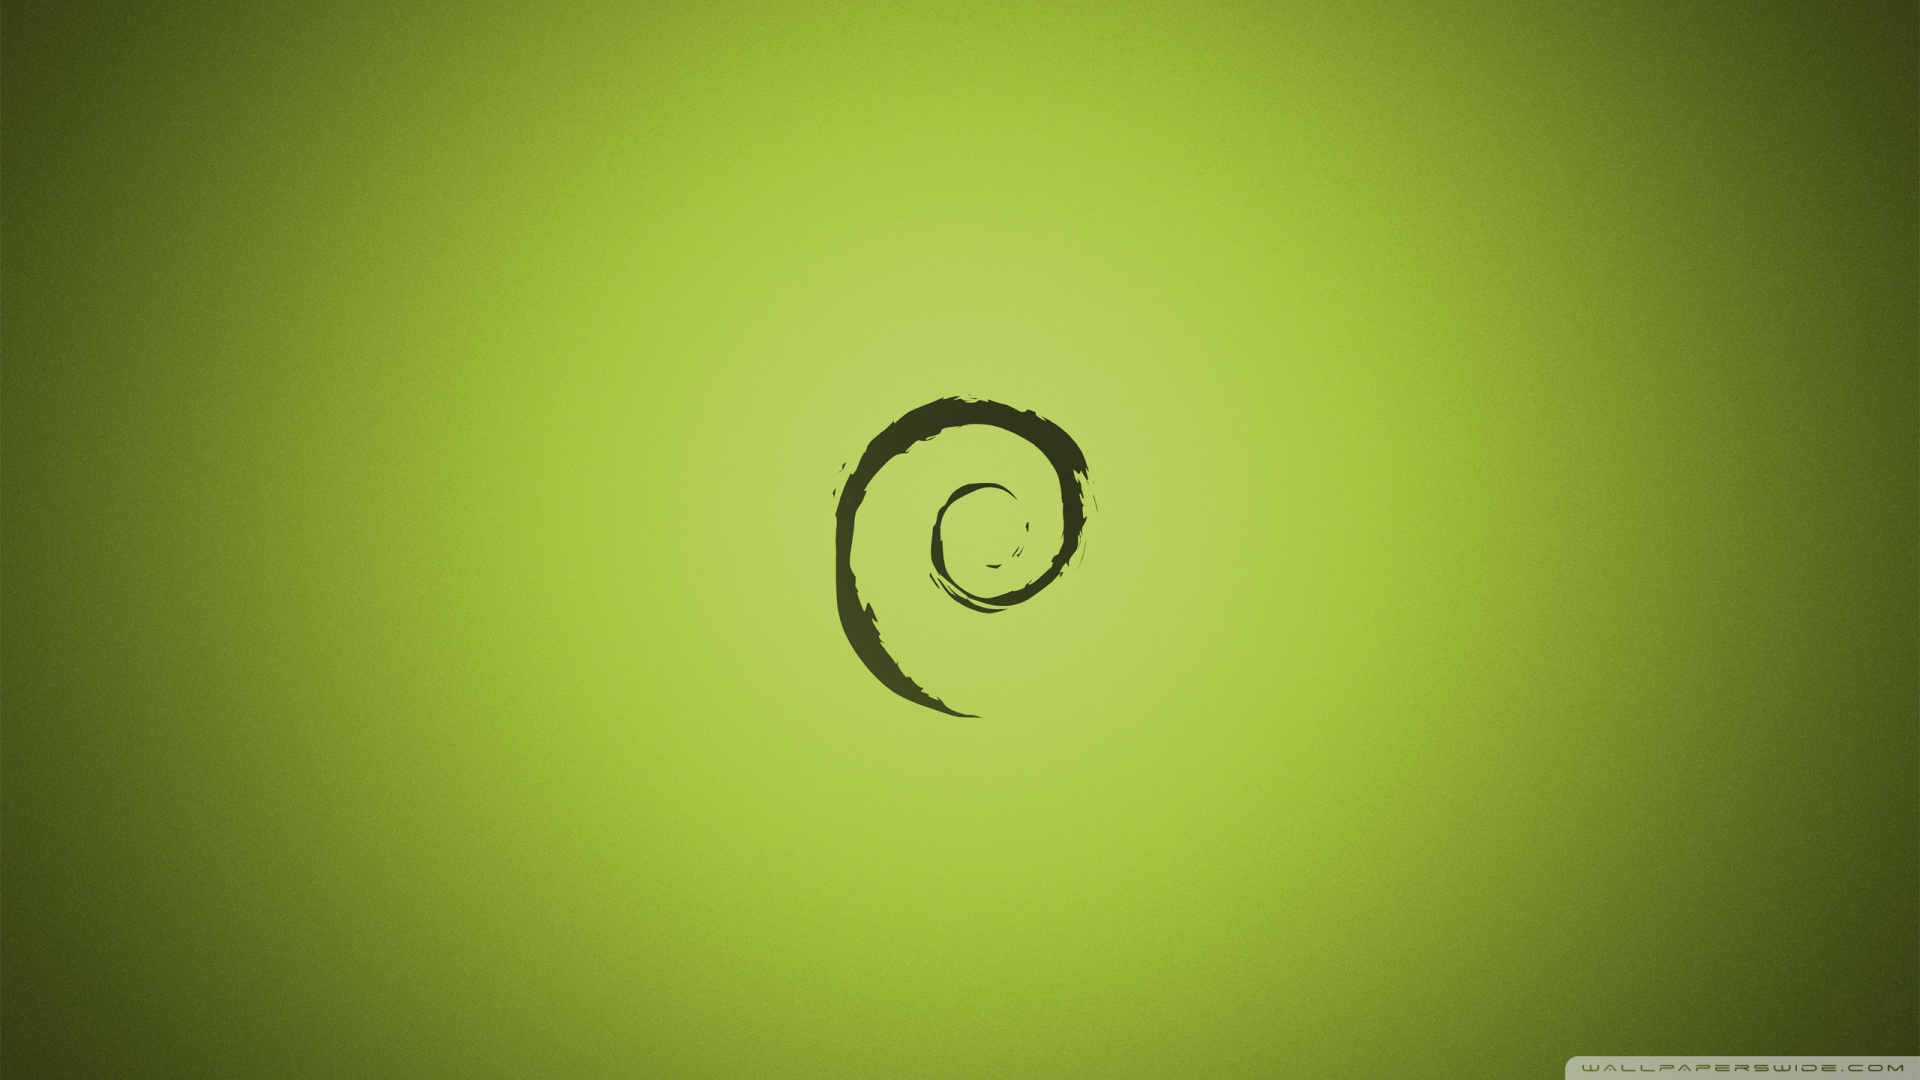 Debian Wallpaper For